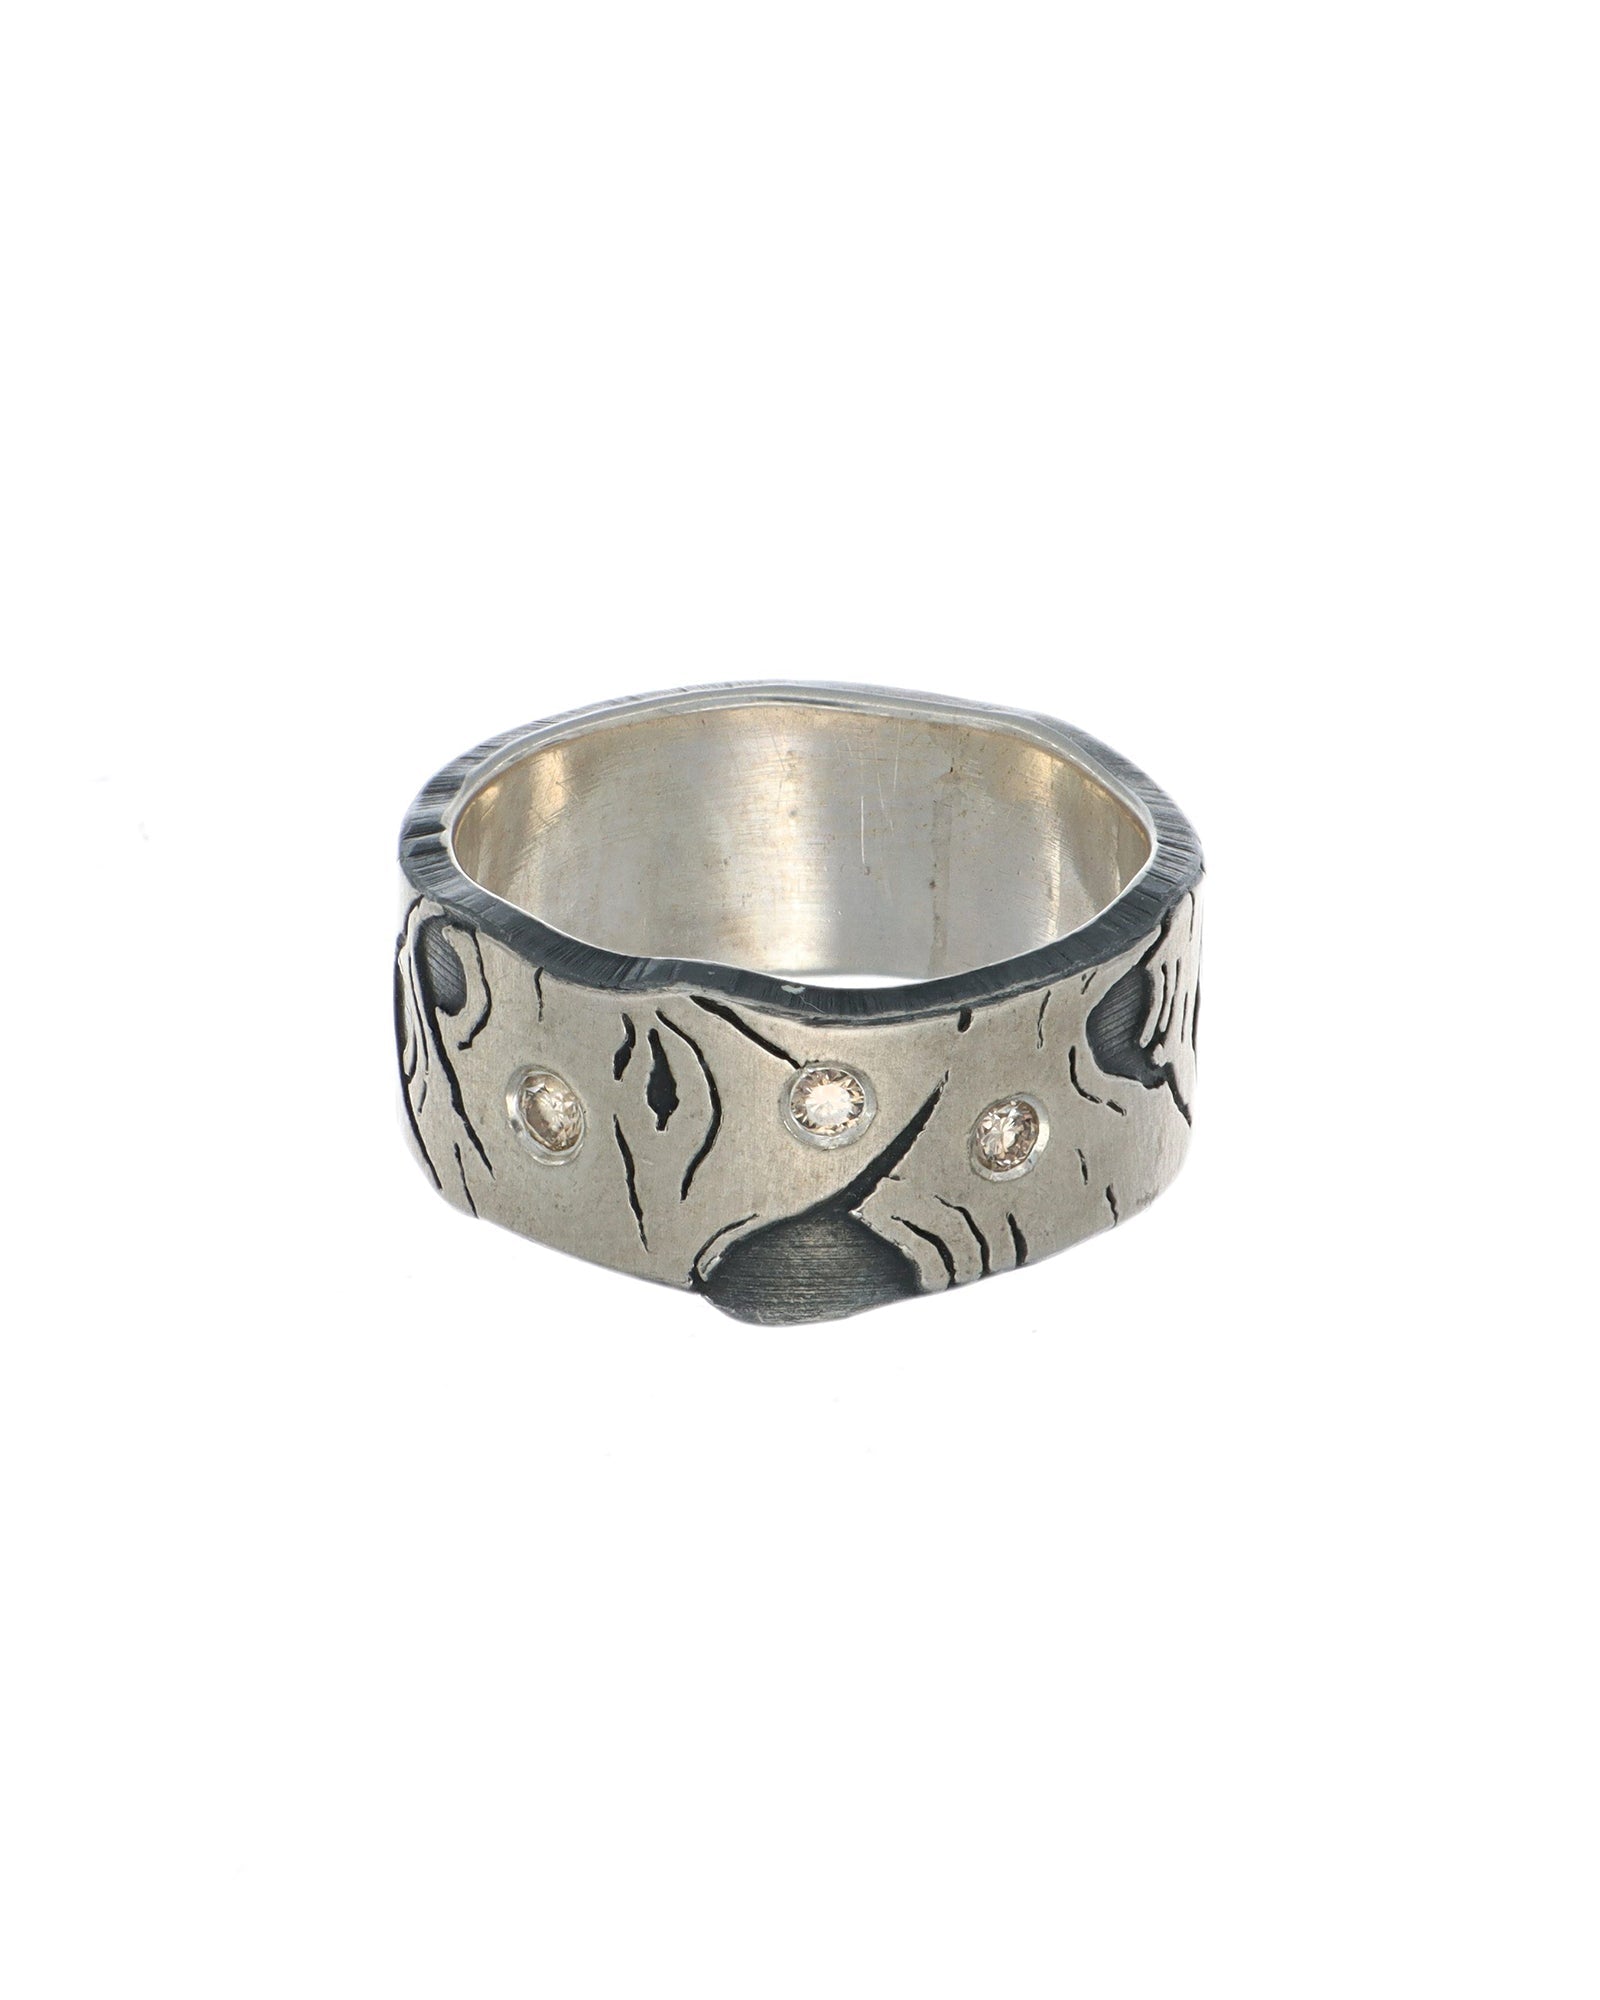 Aspen Allure ring with scatter flush set diamonds